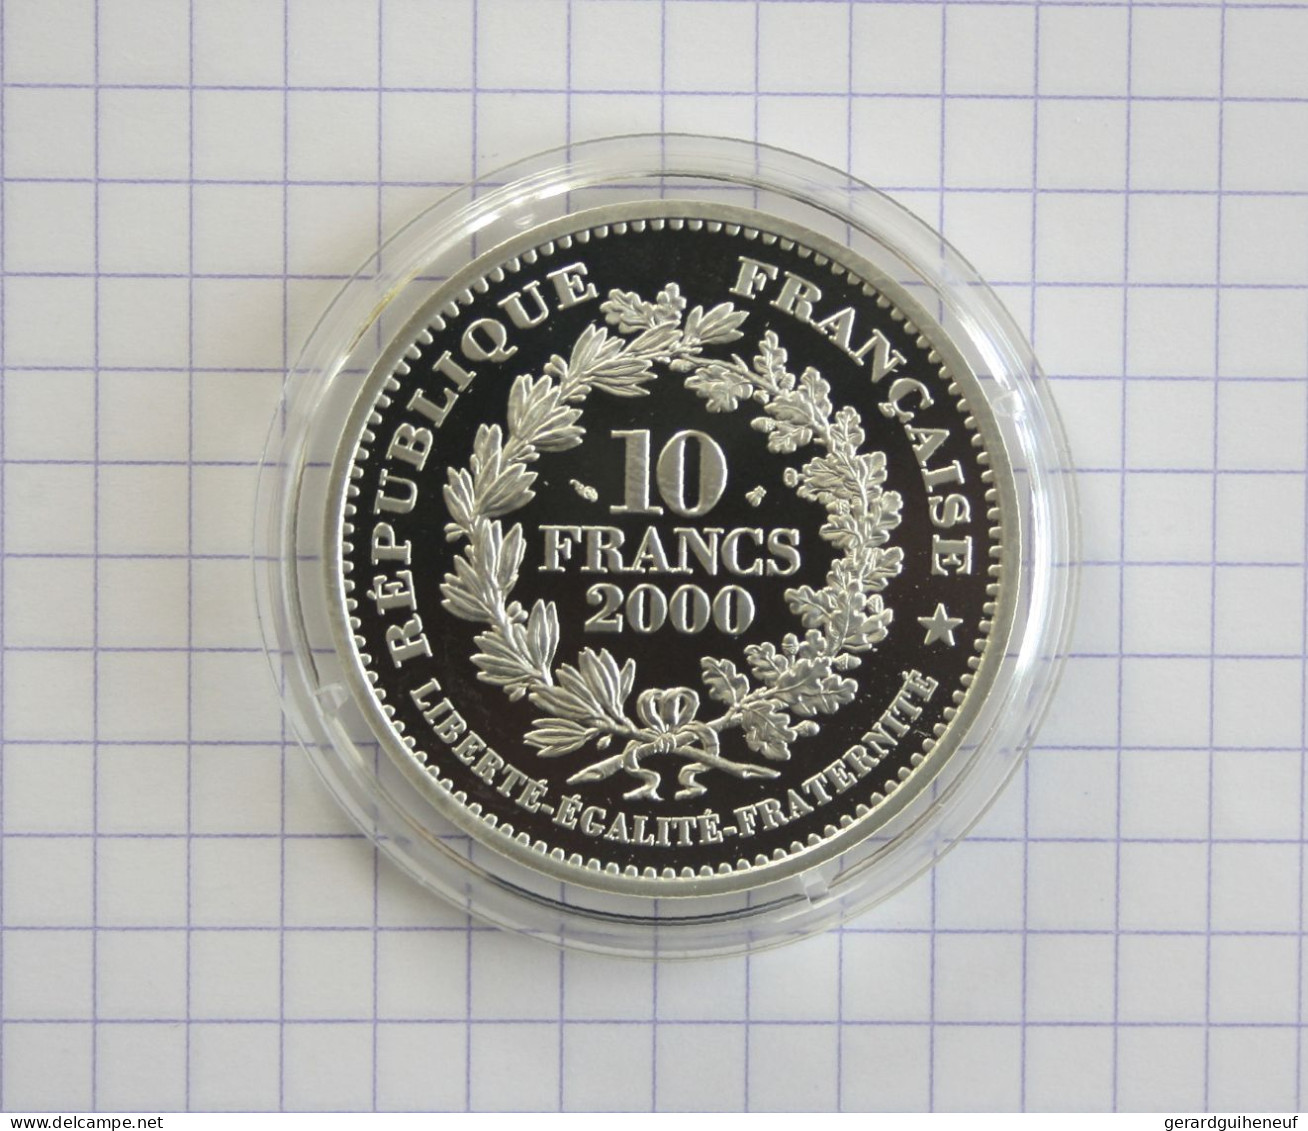 RARISSIME : 10 Francs ARGENT 2000 FDC "Louis XIII" - Cotation : 80 € : - Vrac - Monnaies